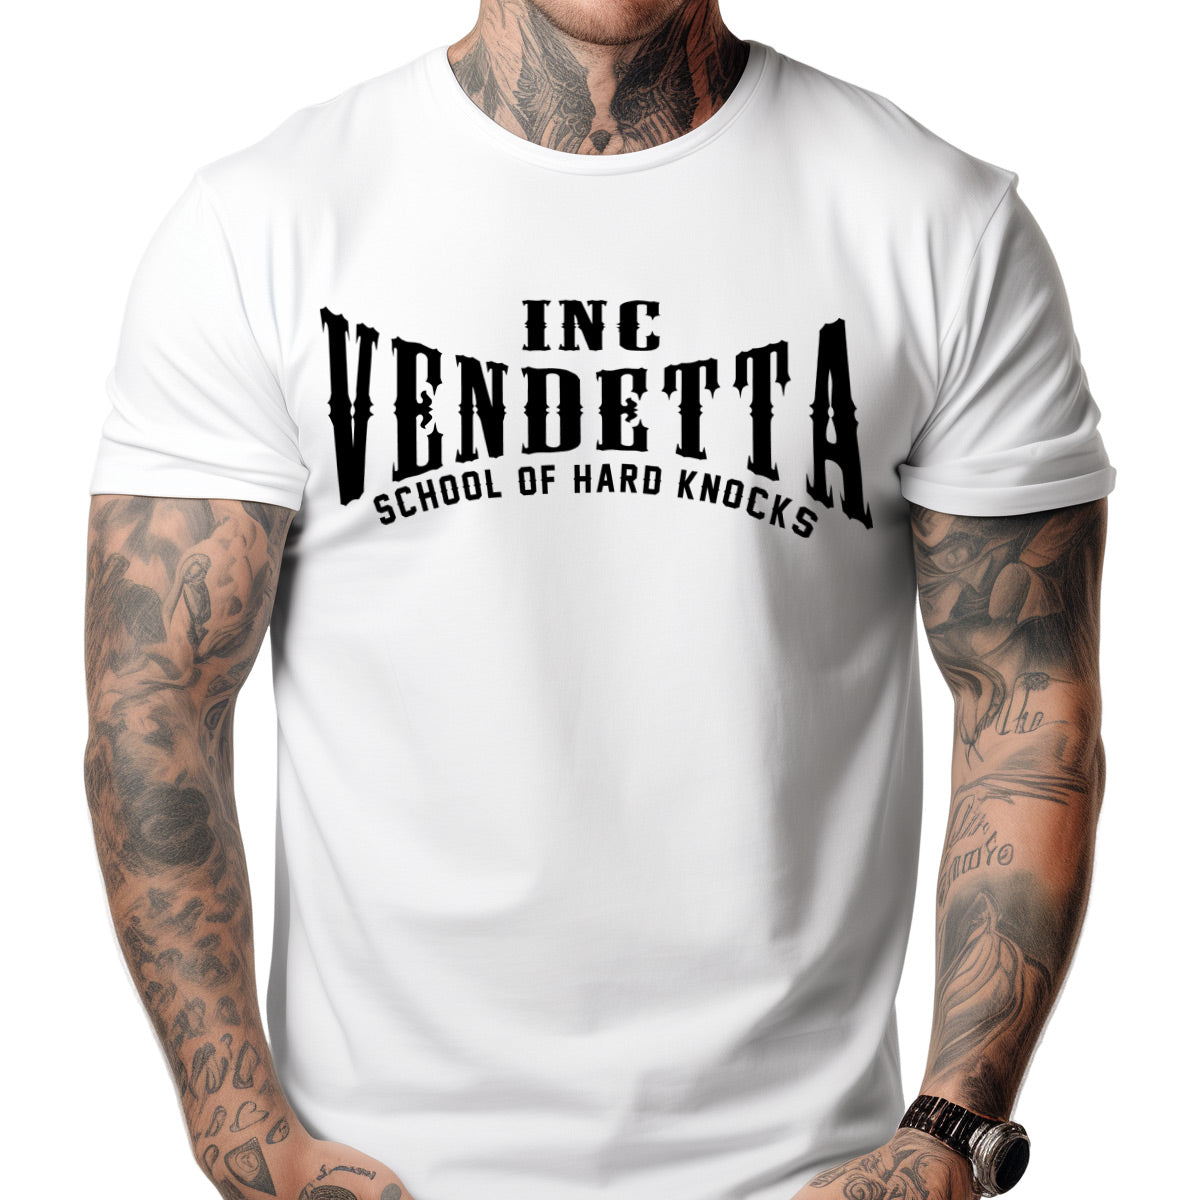 Vendetta Inc. Shirt white Knocks VD-1353